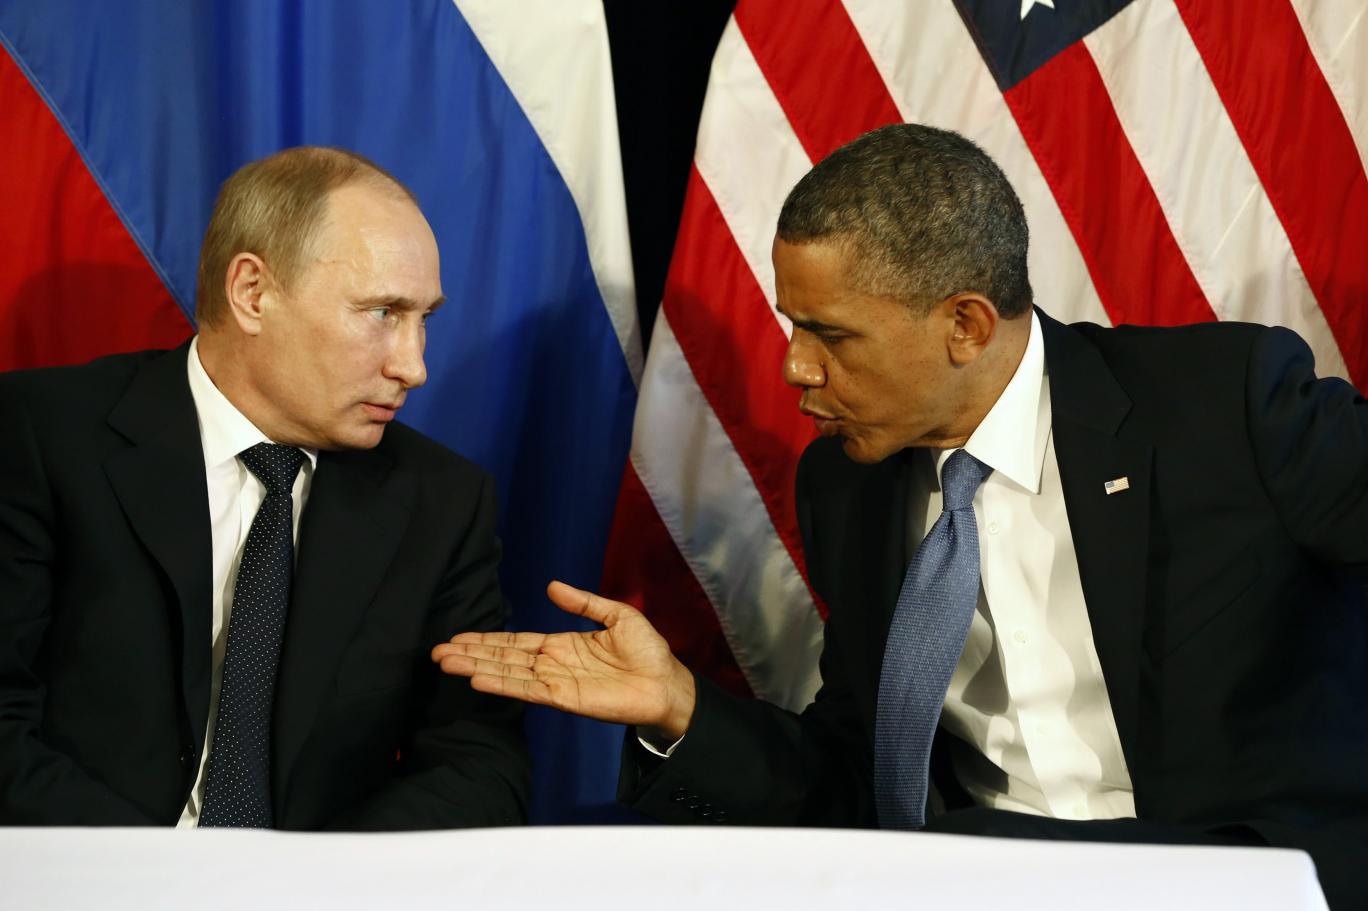 Əsədin hakimiyyətdən getməməsi üçün Obama Putinlə əməkdaşlığa getdi– Sabiq Pentaqon rəsmisindən sensasiyalı açıqlama 